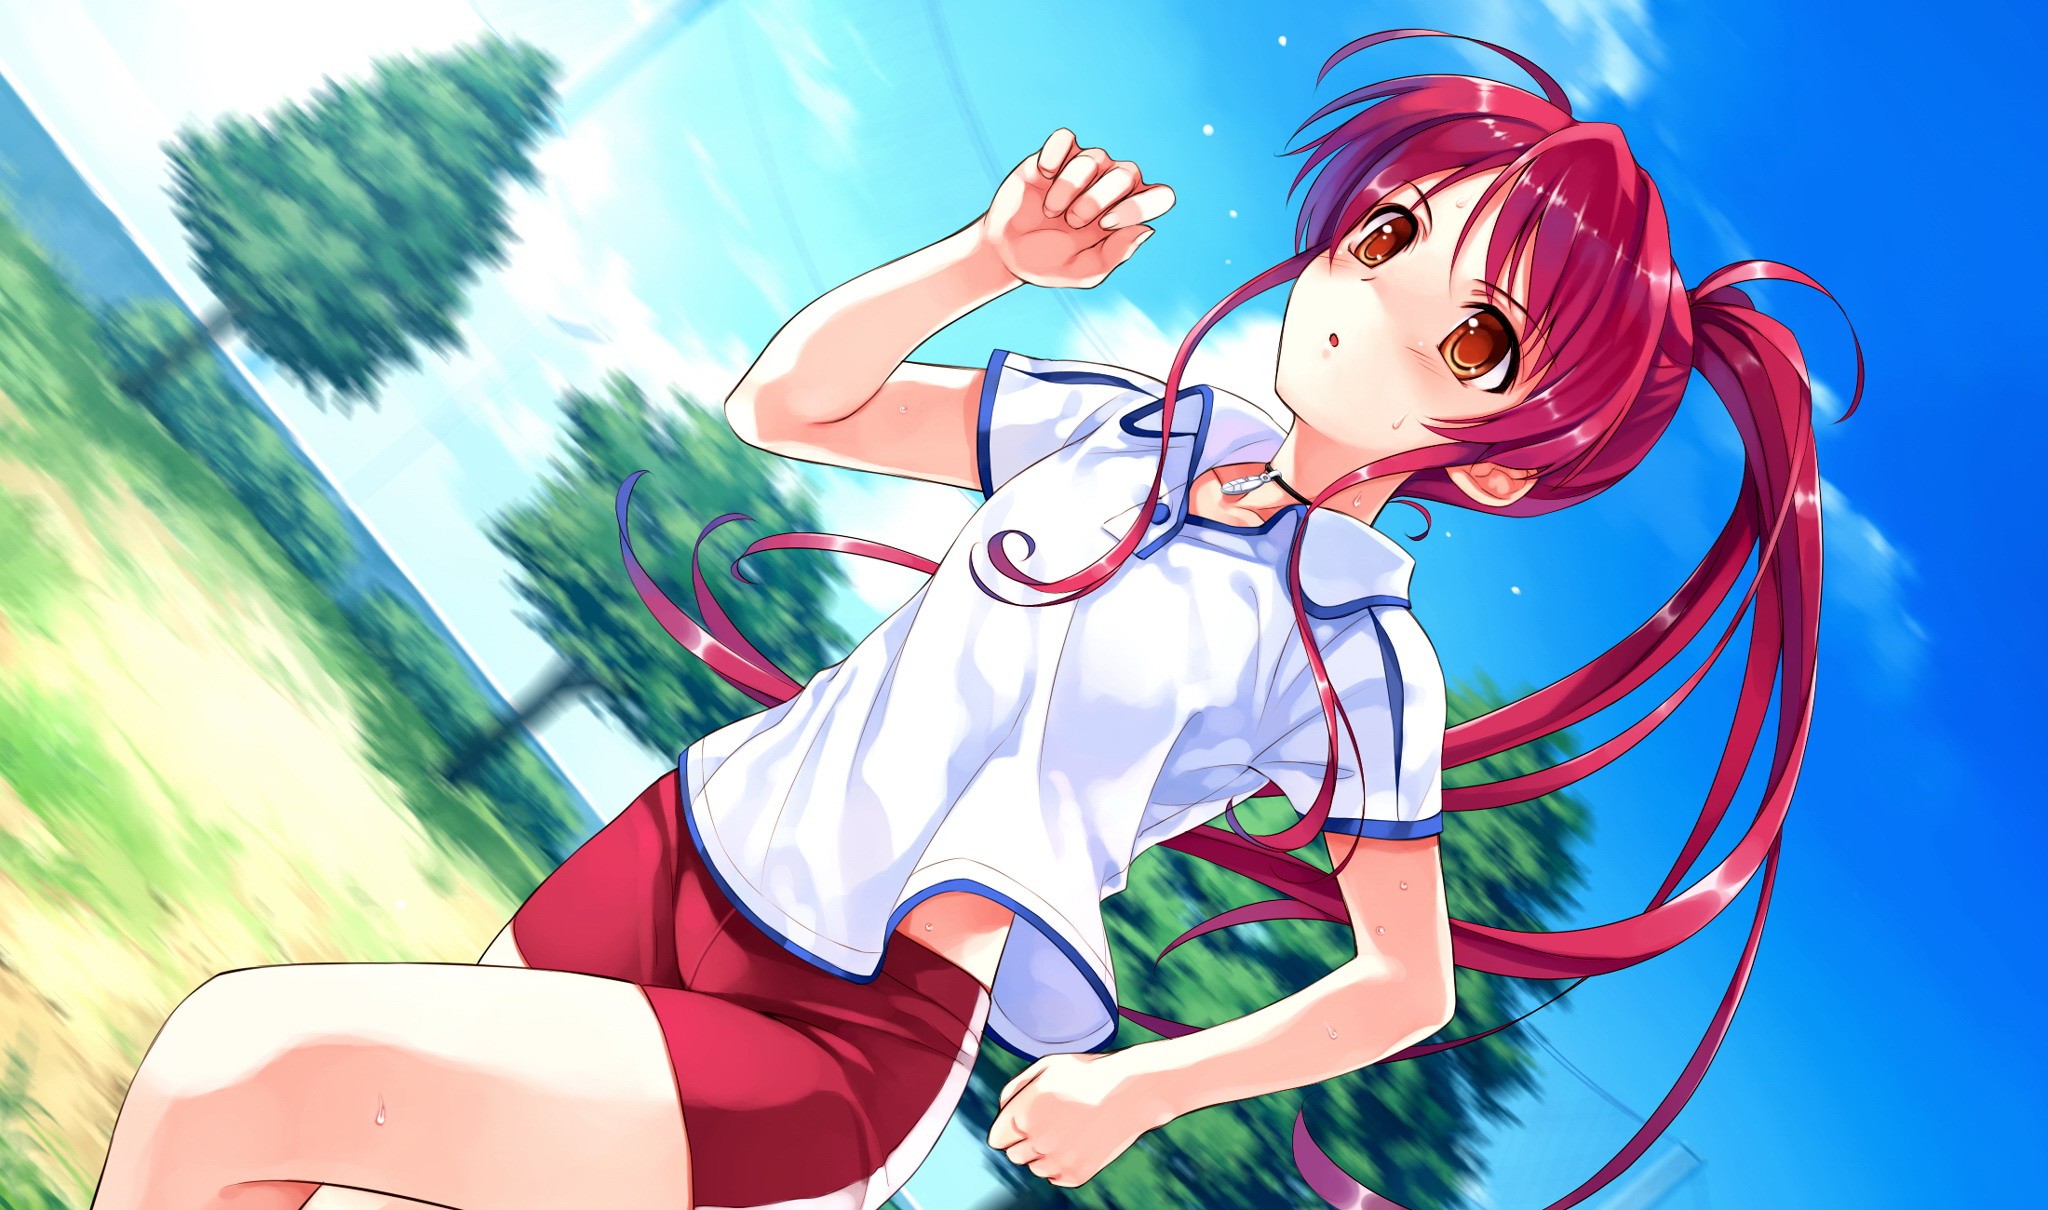 Anime 2048x1210 Deep Blue Sky & Pure White Wings anime girls redhead running anime Misaki Kurehito long hair sport exercise red eyes